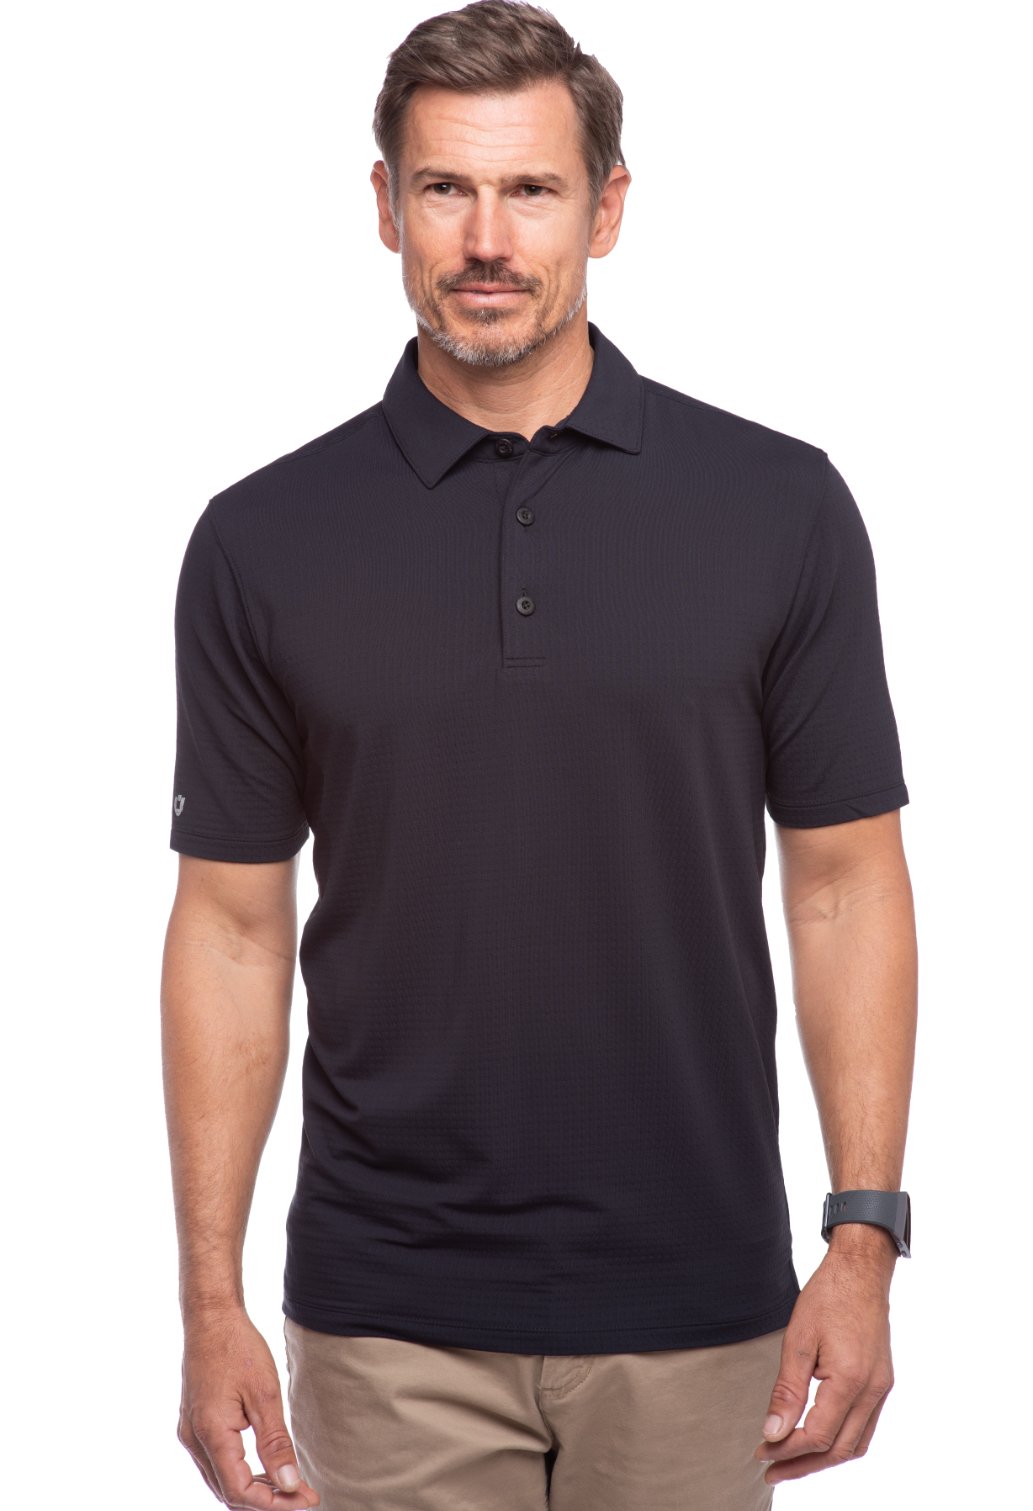 PEASKJP Men's Regular-Fit Polo Shirt Long Sleeve Golf Shirts Lightweight  UPF 50+ Sun Protection Cool Shirts for Men Work Fishing Outdoor,Grey XXXL 